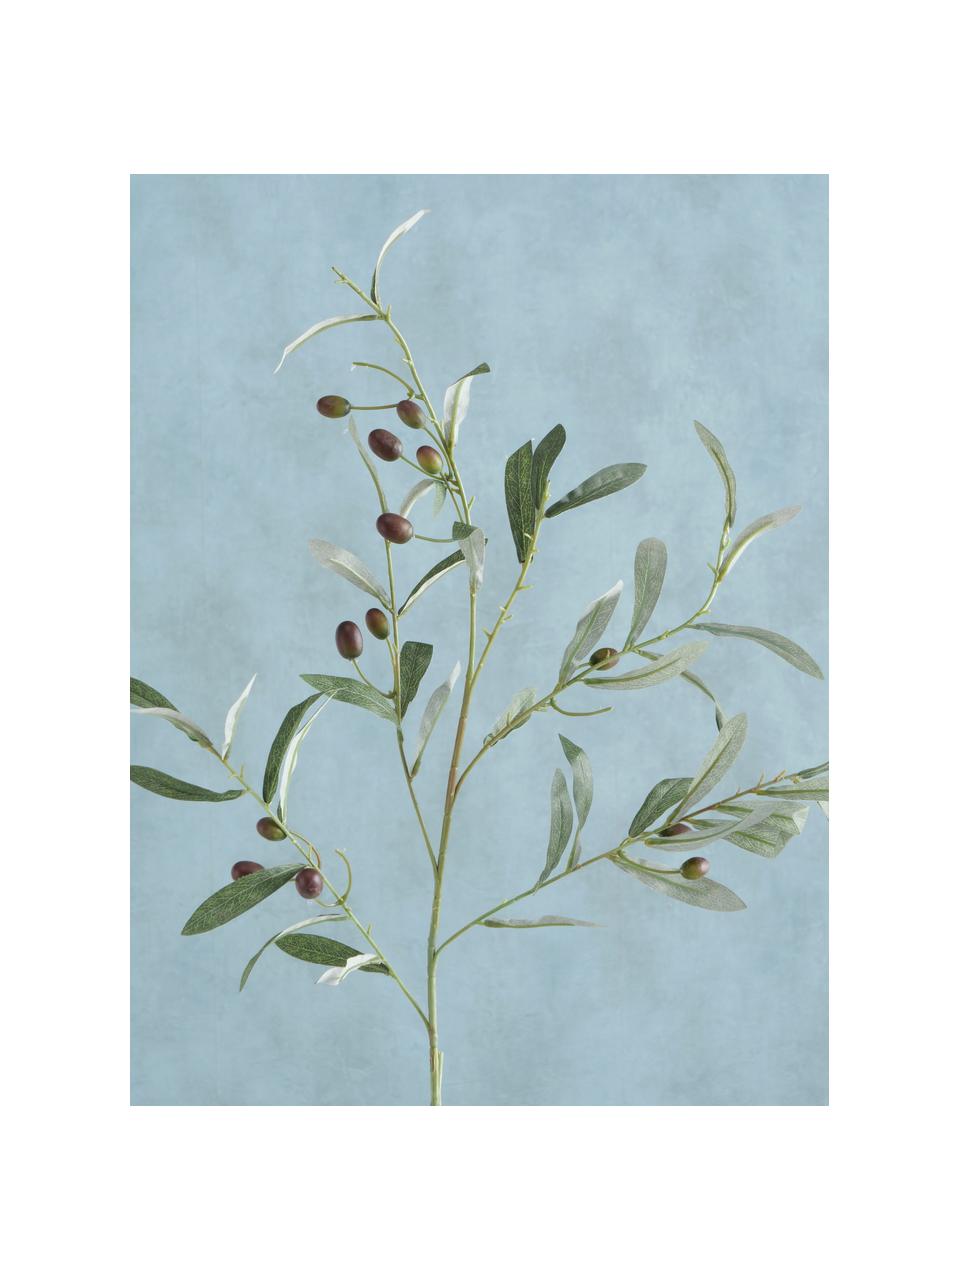 Dekozweig Olive Garden, Kunststoff, Grüntöne, L 77 cm